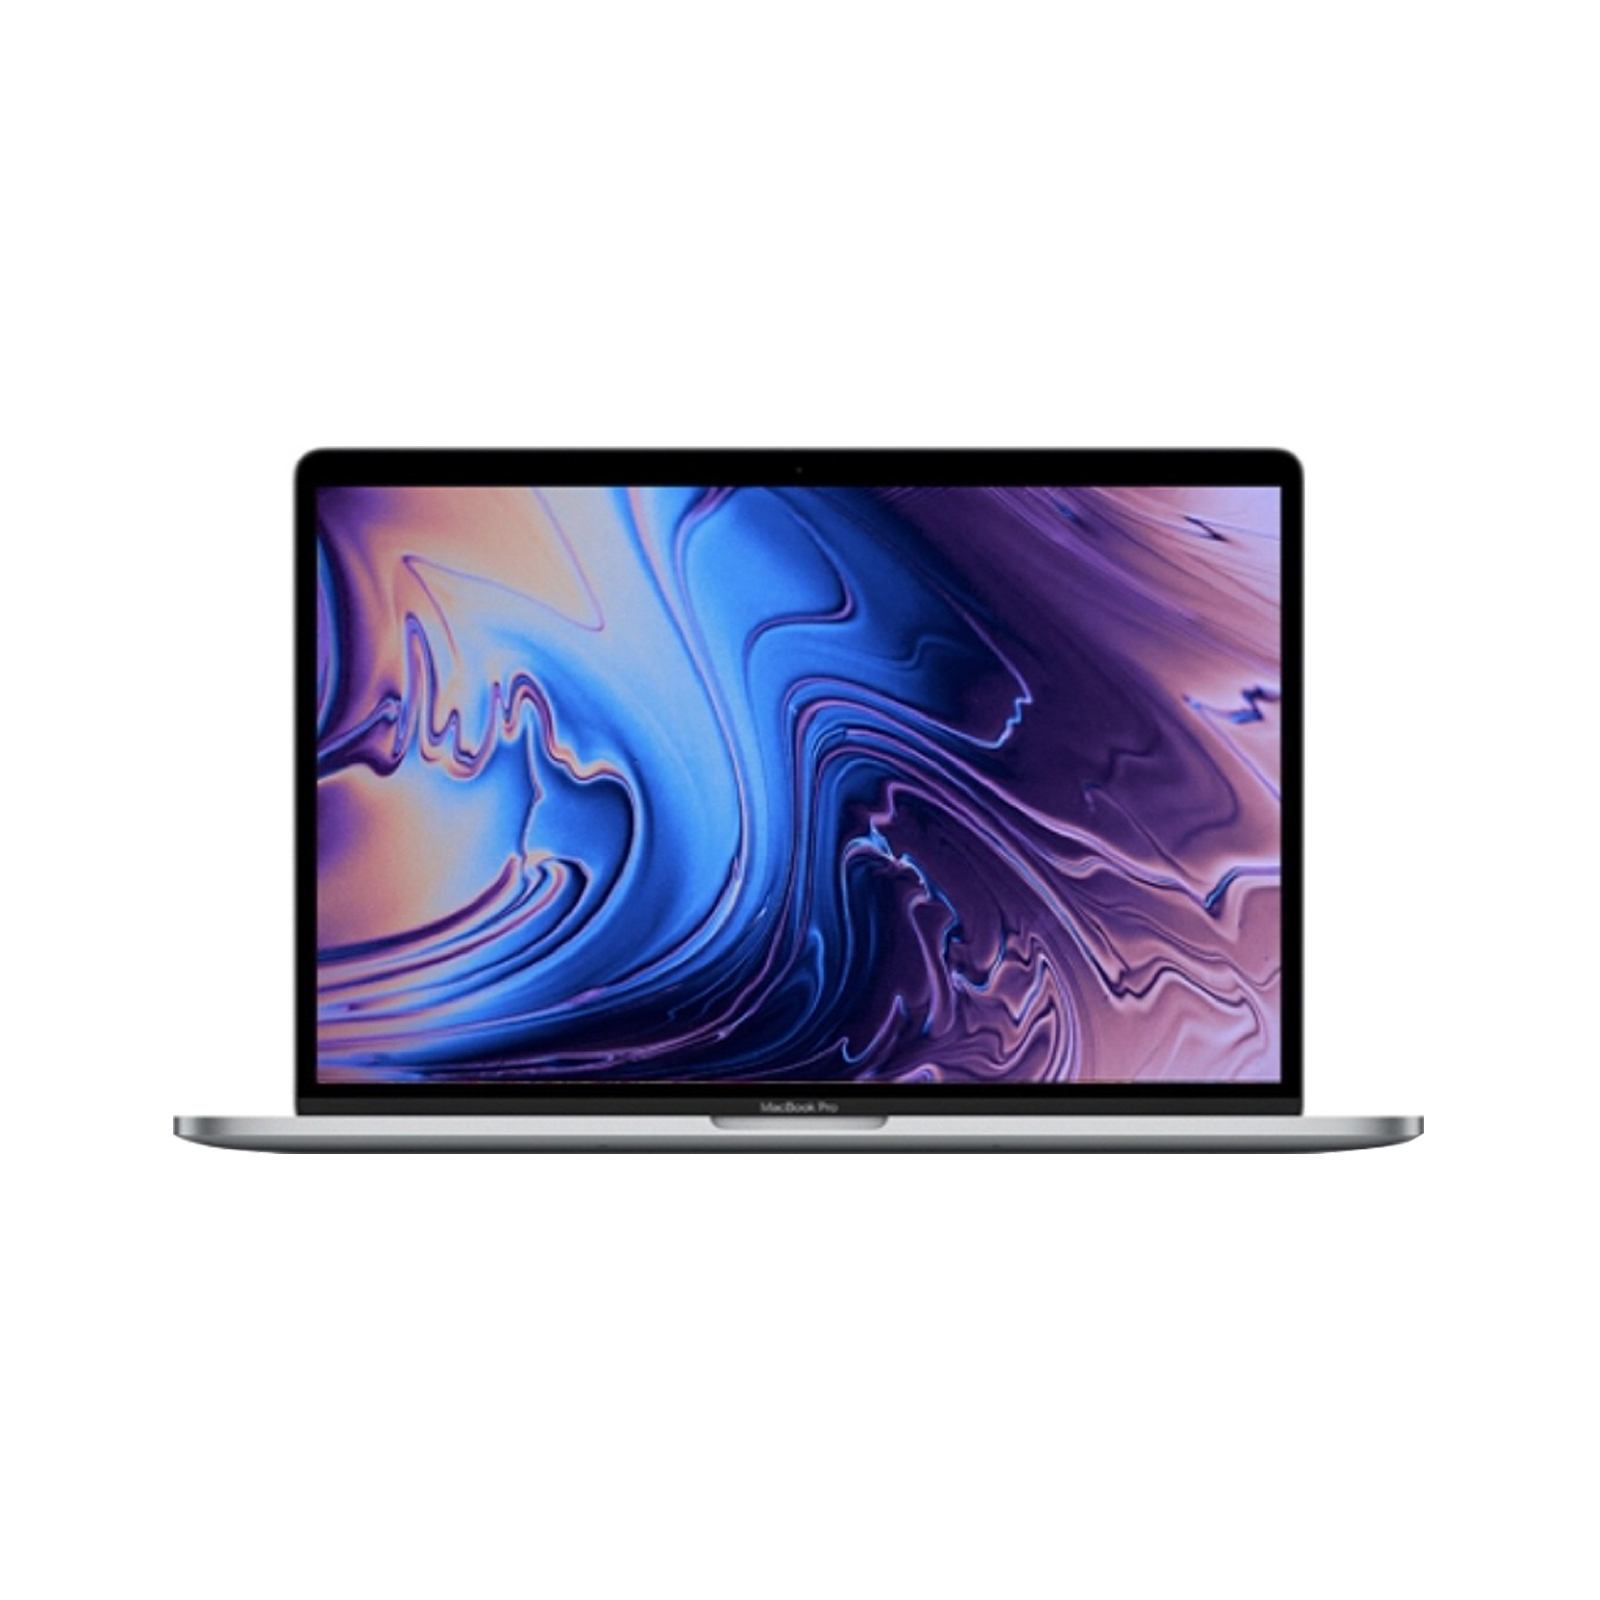 MacBook Pro 15" 2019 - Core i7 2.6Ghz / 16GB RAM / 256GB SSD / 555X GPU